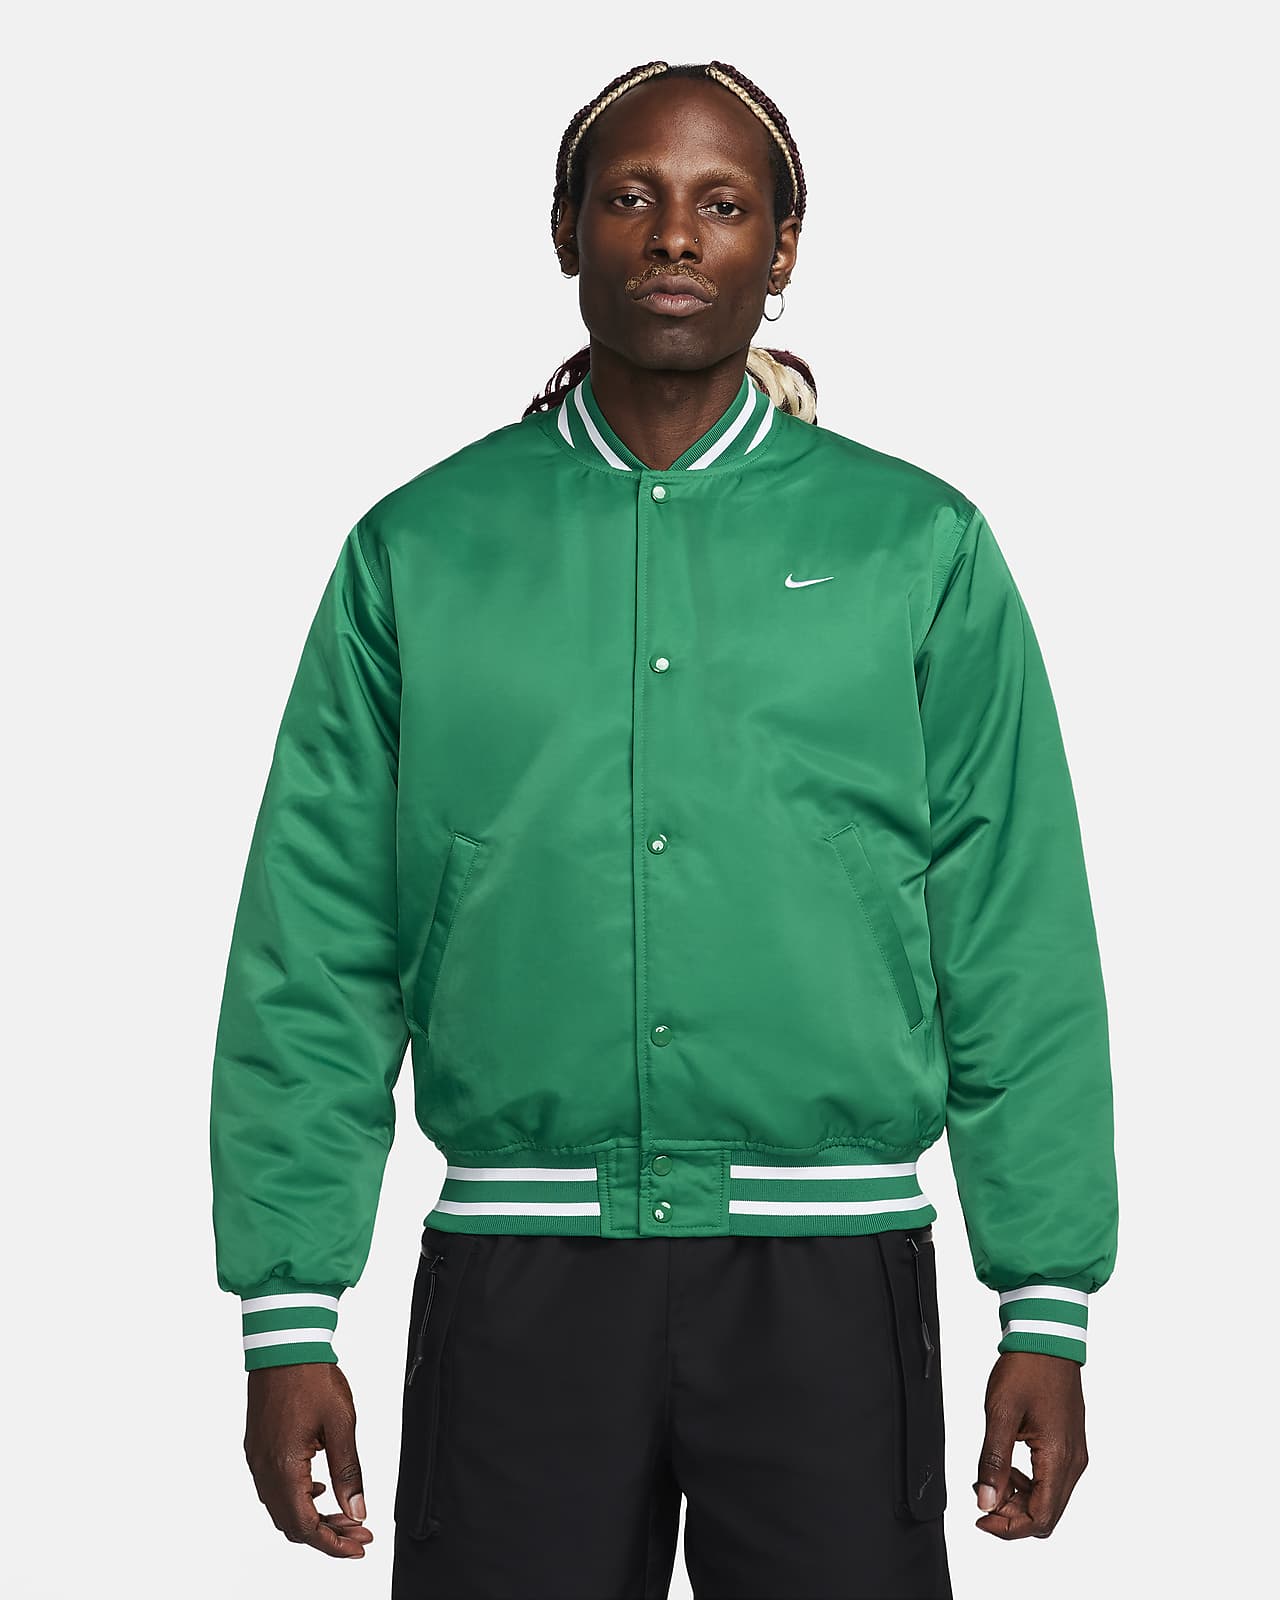 Nike Authentics Men's Dugout Jacket